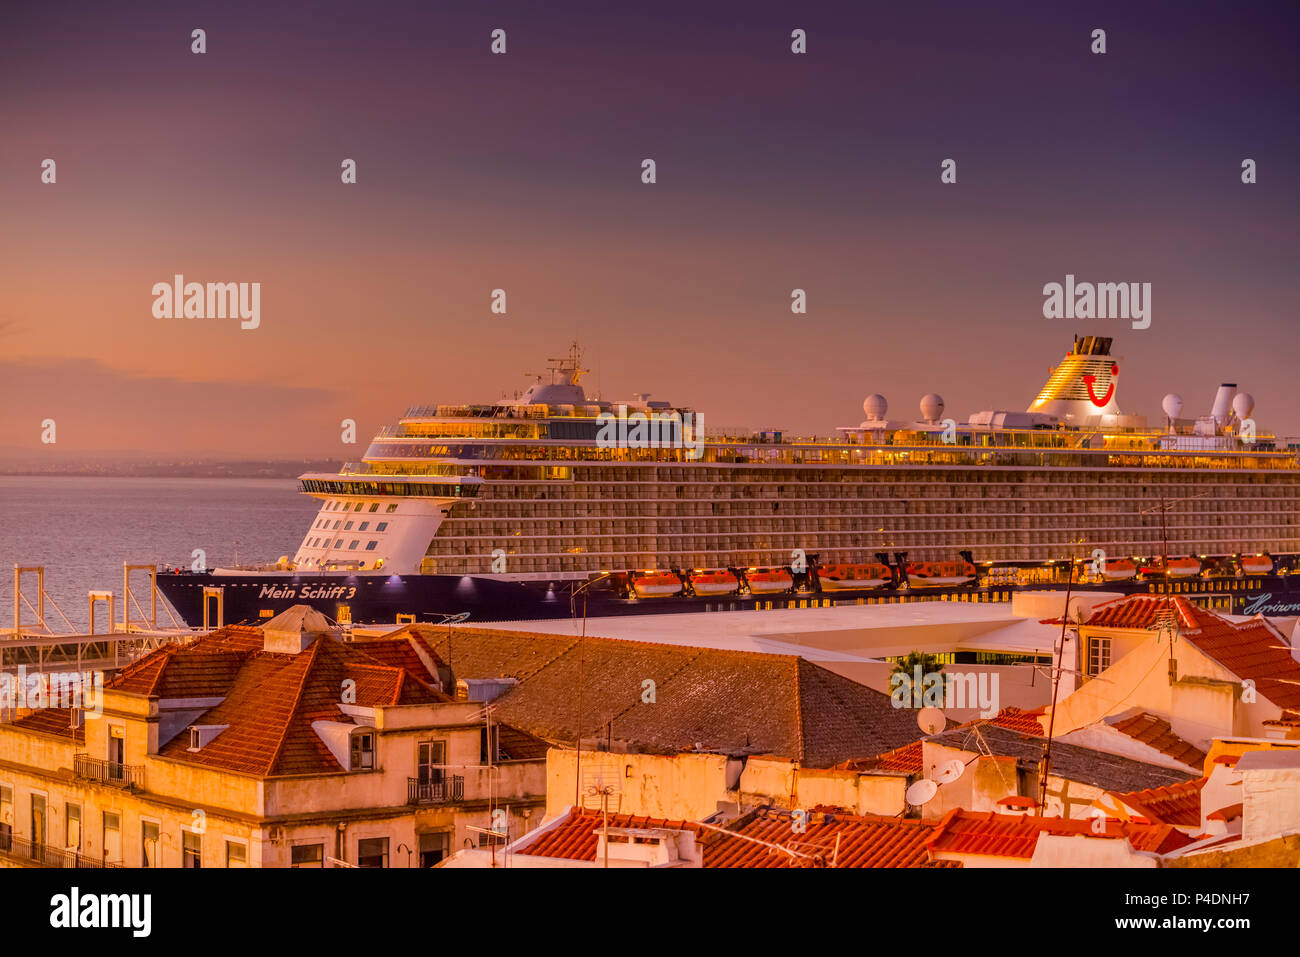 Europa, Portugal, Lisbonne, Alfama, le Tajo, Tejo, Schiff, Kreuzfahrtschiff Banque D'Images